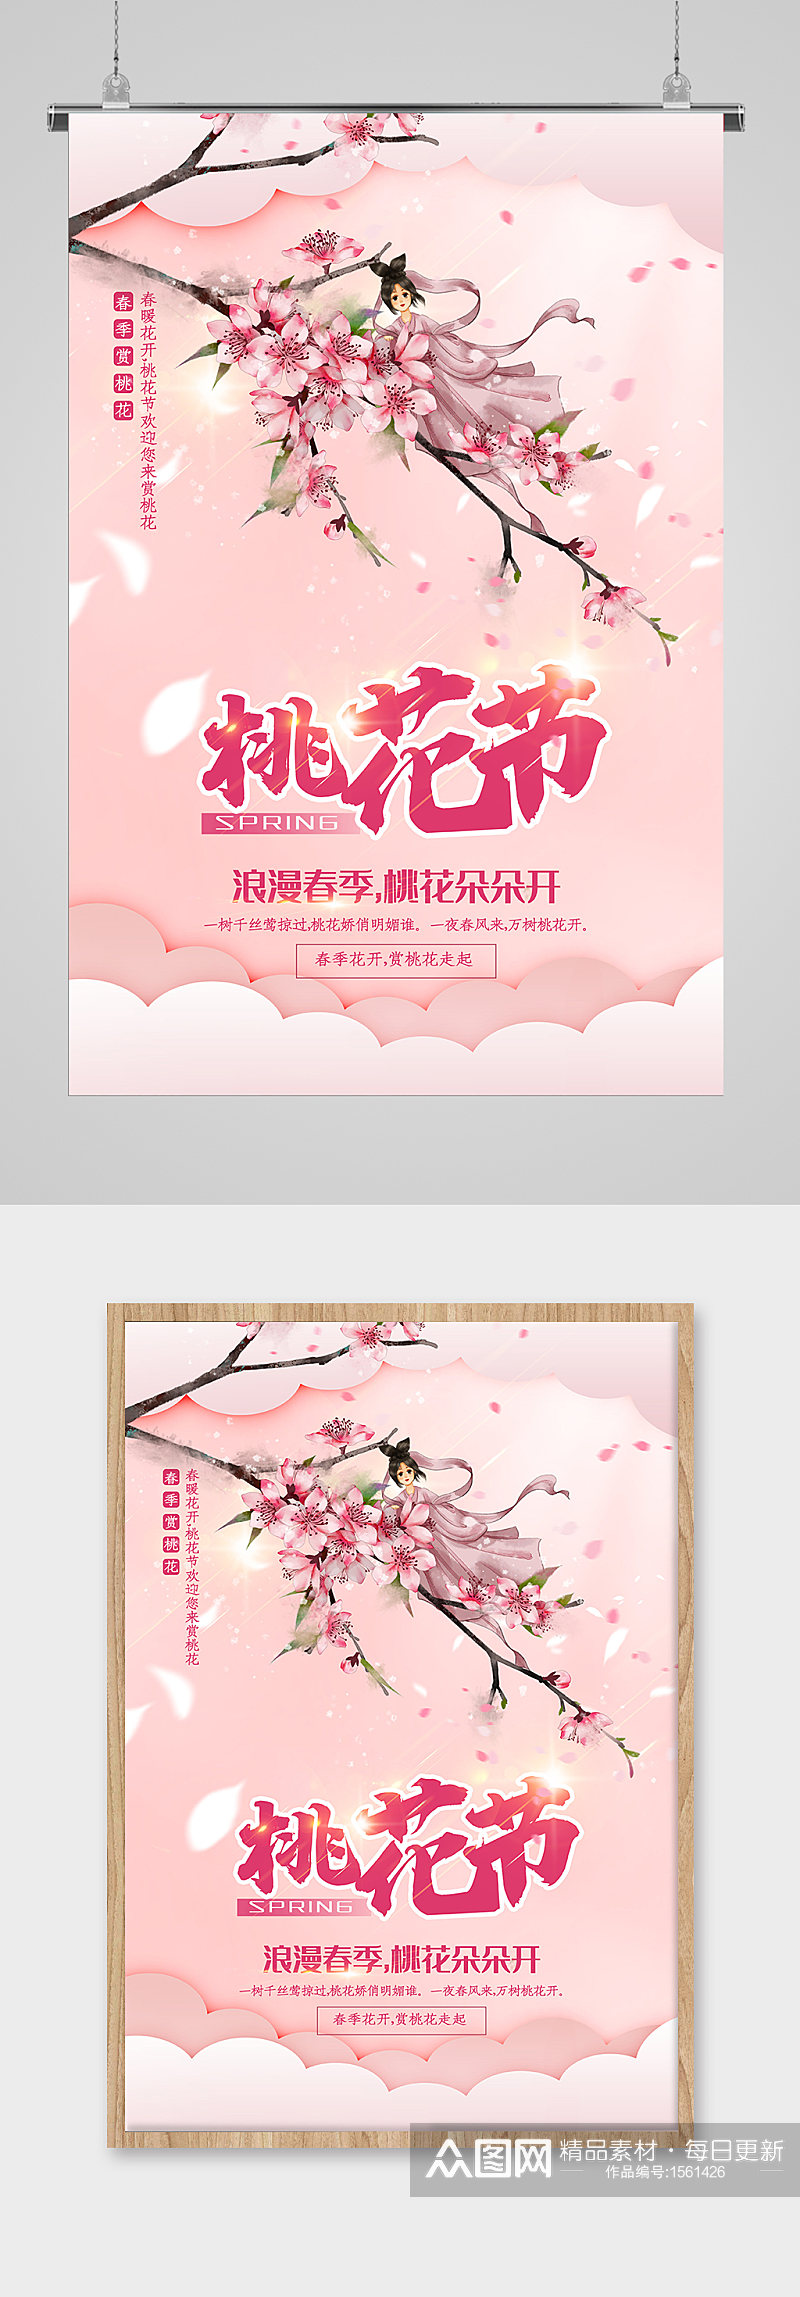 春季桃花节宣传海报素材